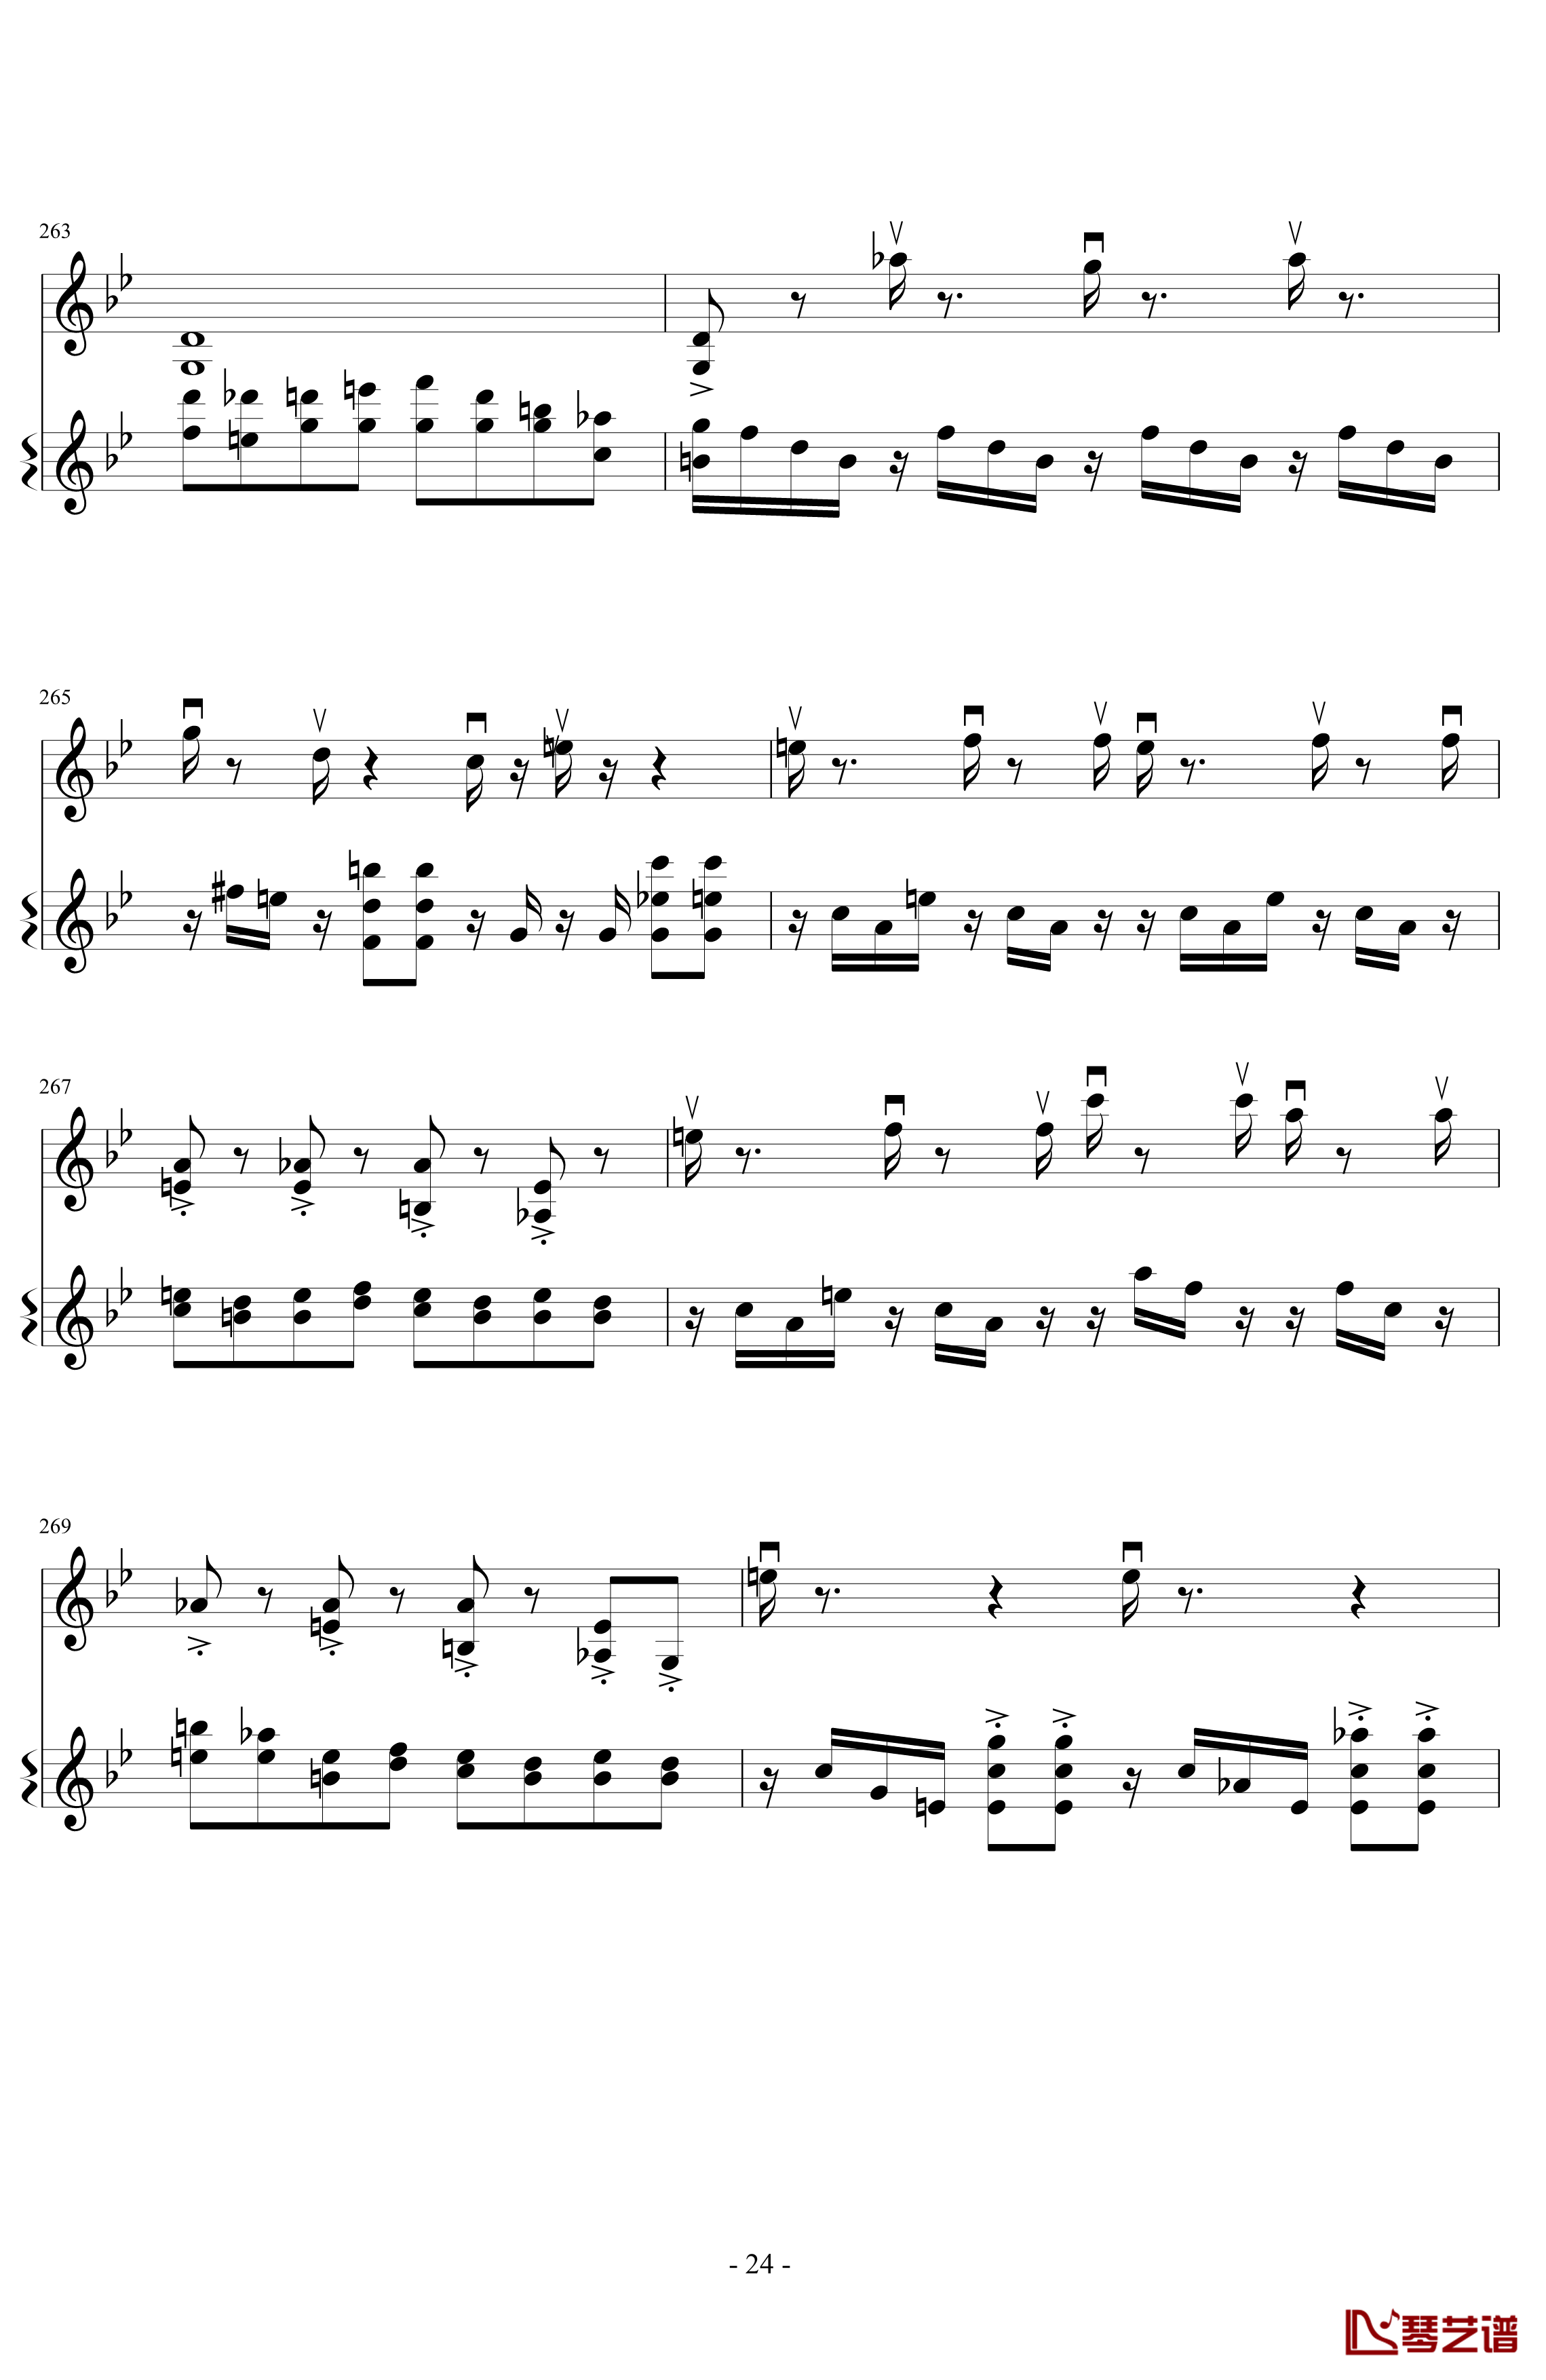 意大利国歌变奏曲钢琴谱-DXF24